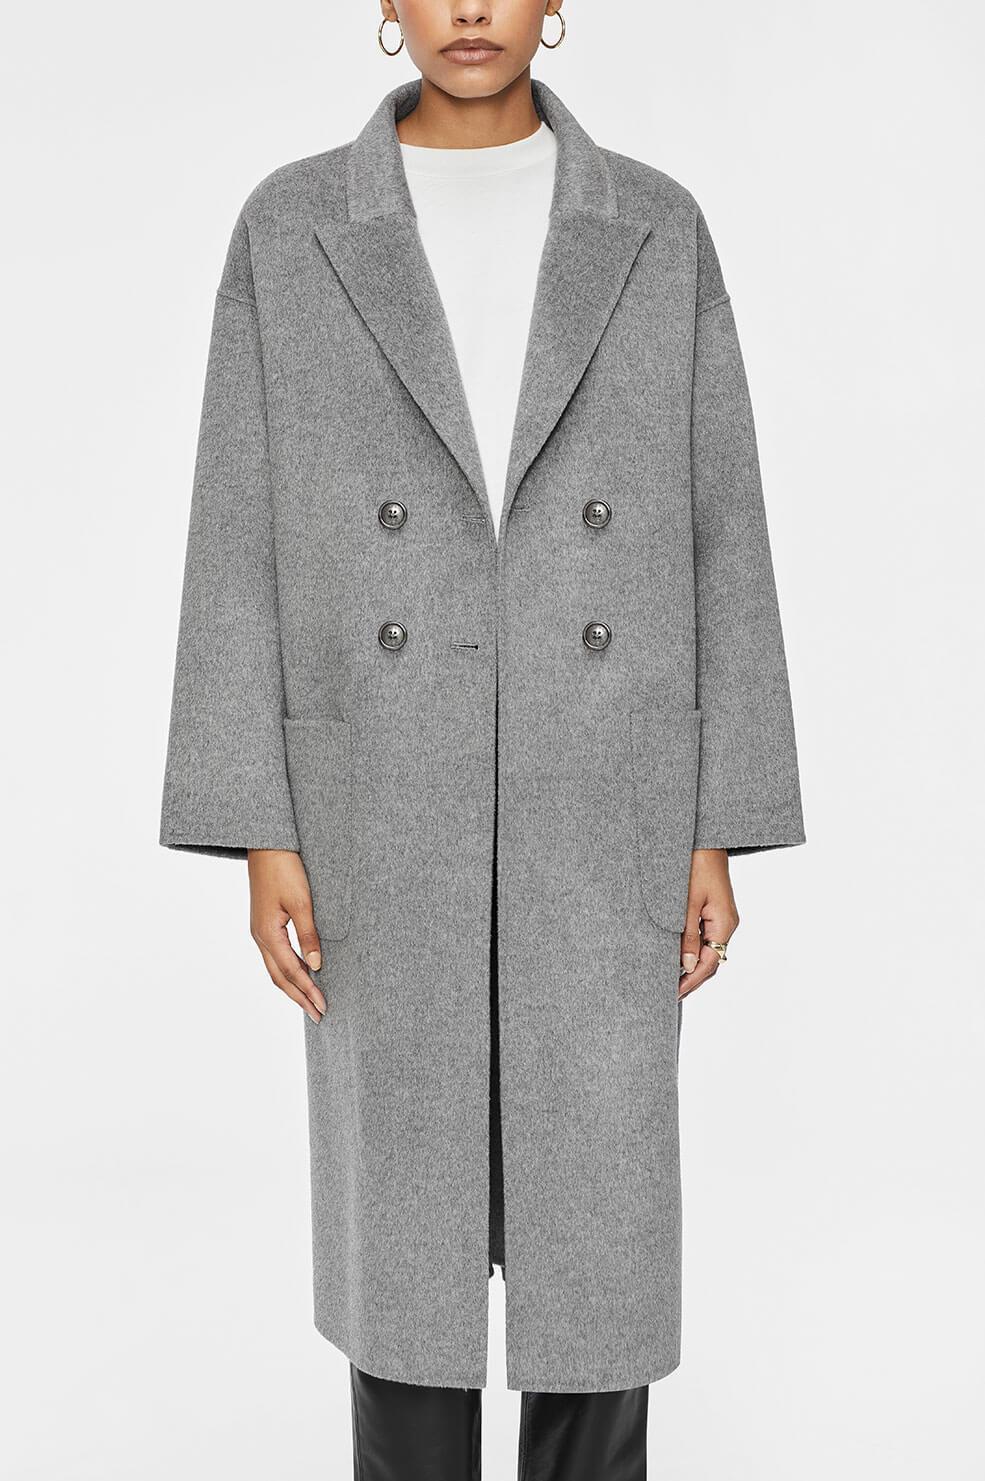 Anine Bing Wool Dylan Coat in Grey (Gray) | Lyst